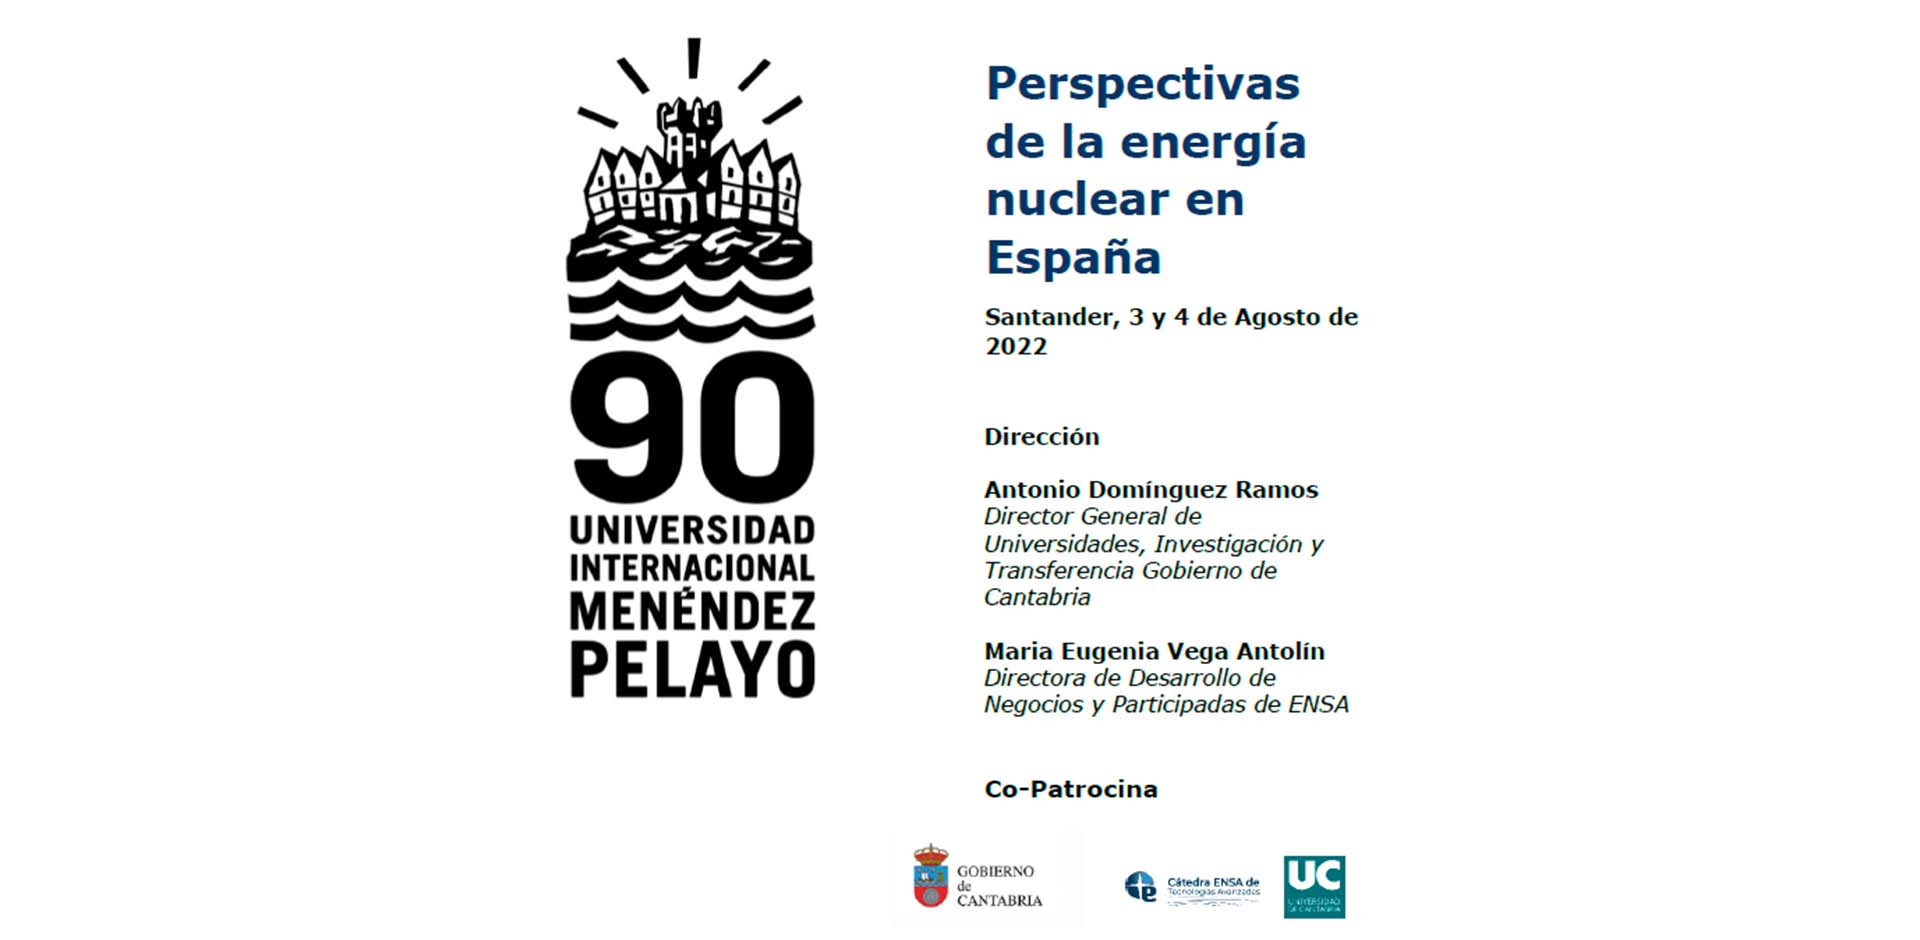 INGECID aporta su visión sobre la perspectiva de la energía nuclear en España participando en los cursos de verano de la UIMP